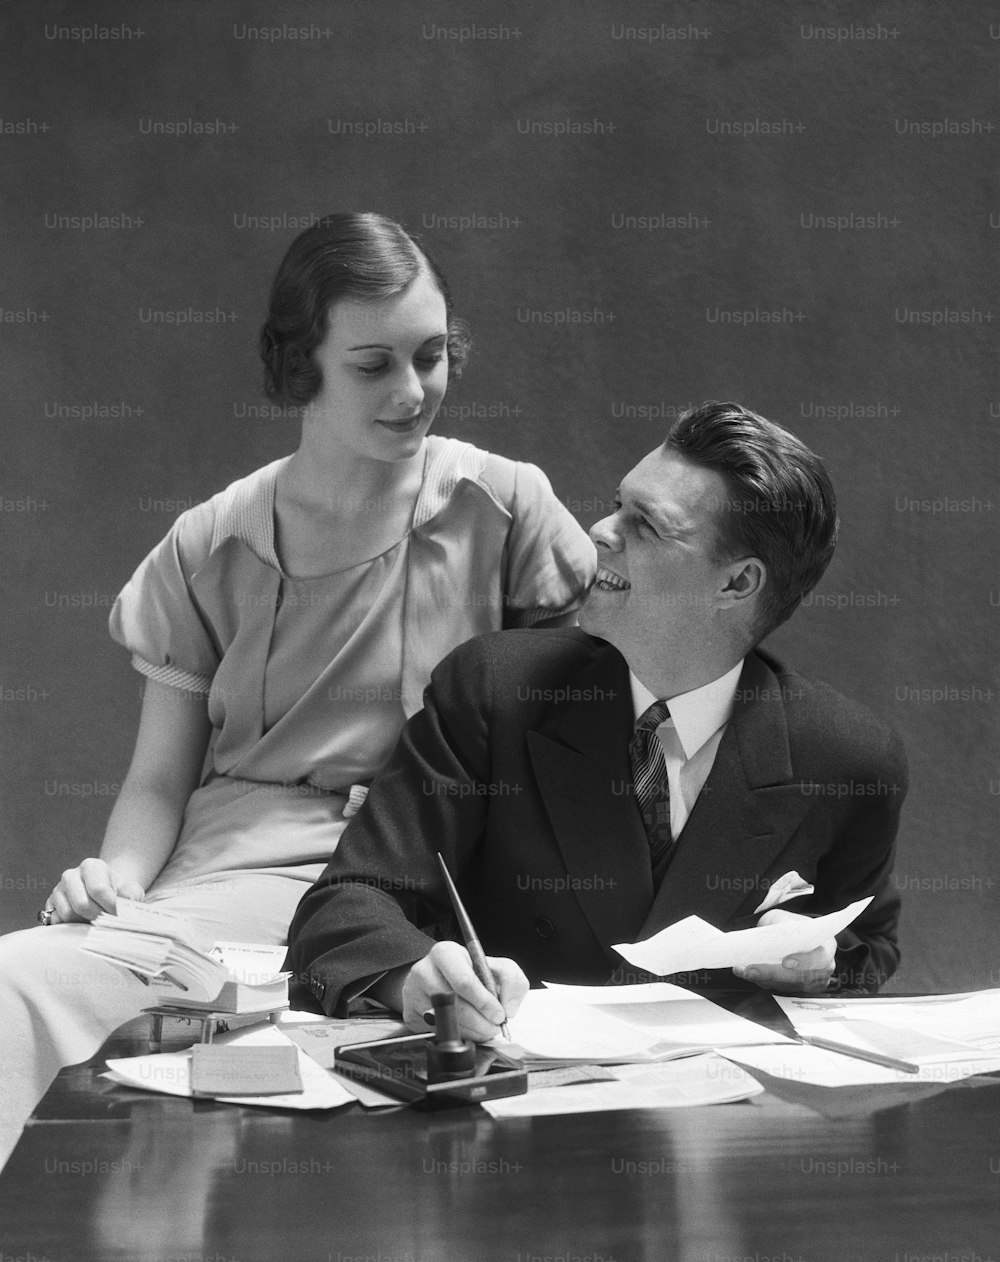 STATI UNITI - 1930 CIRCA: Coppia seduta alla scrivania, uomo che guarda la donna seduta sul bracciolo della sedia.